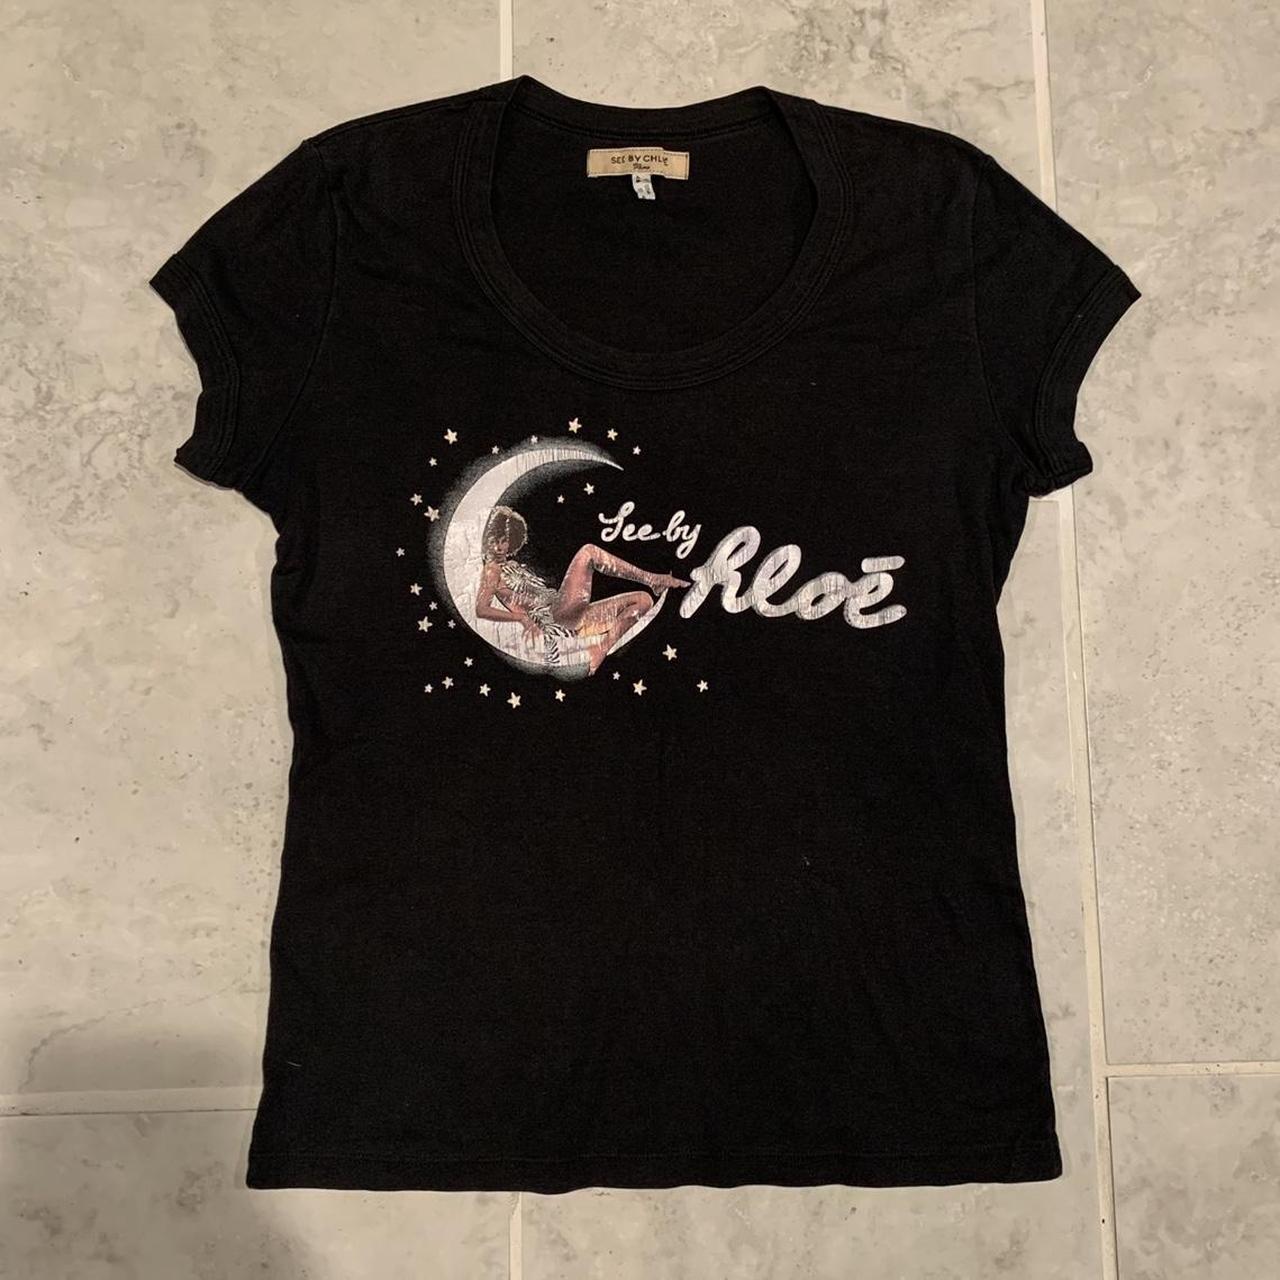 See by Chloé Women's Black T-shirt